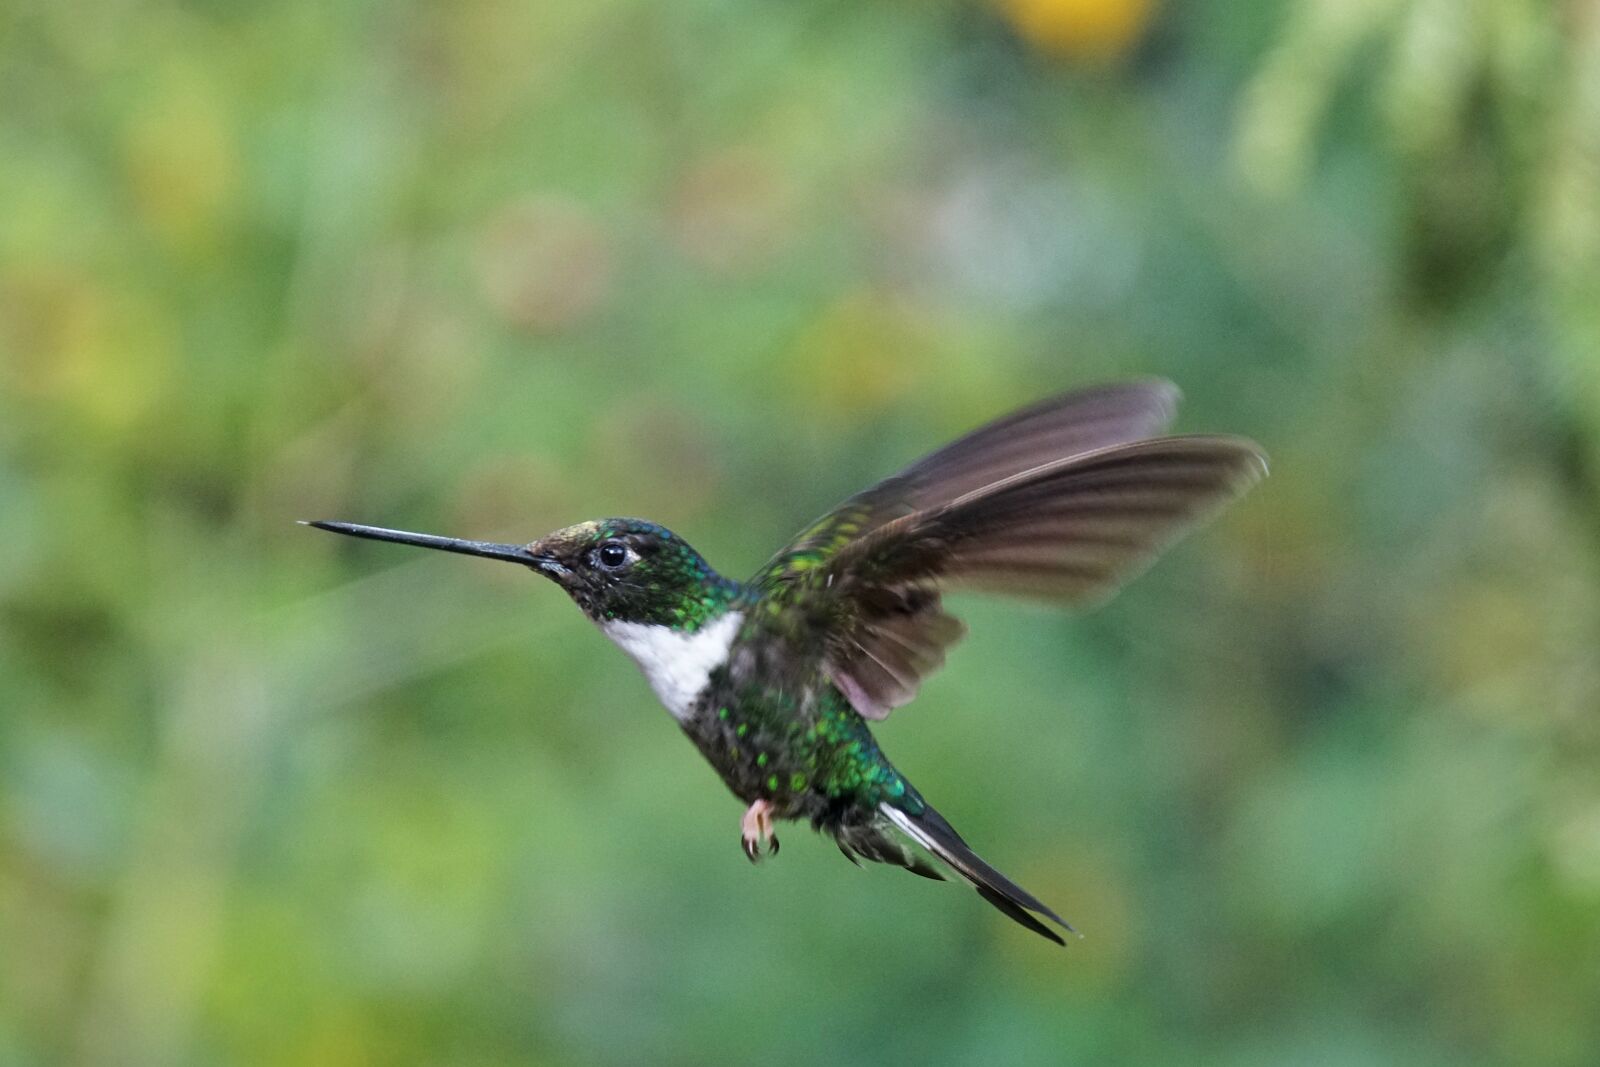 Sony E 18-200mm F3.5-6.3 OSS sample photo. Hummingbird, kolibri, bird photography